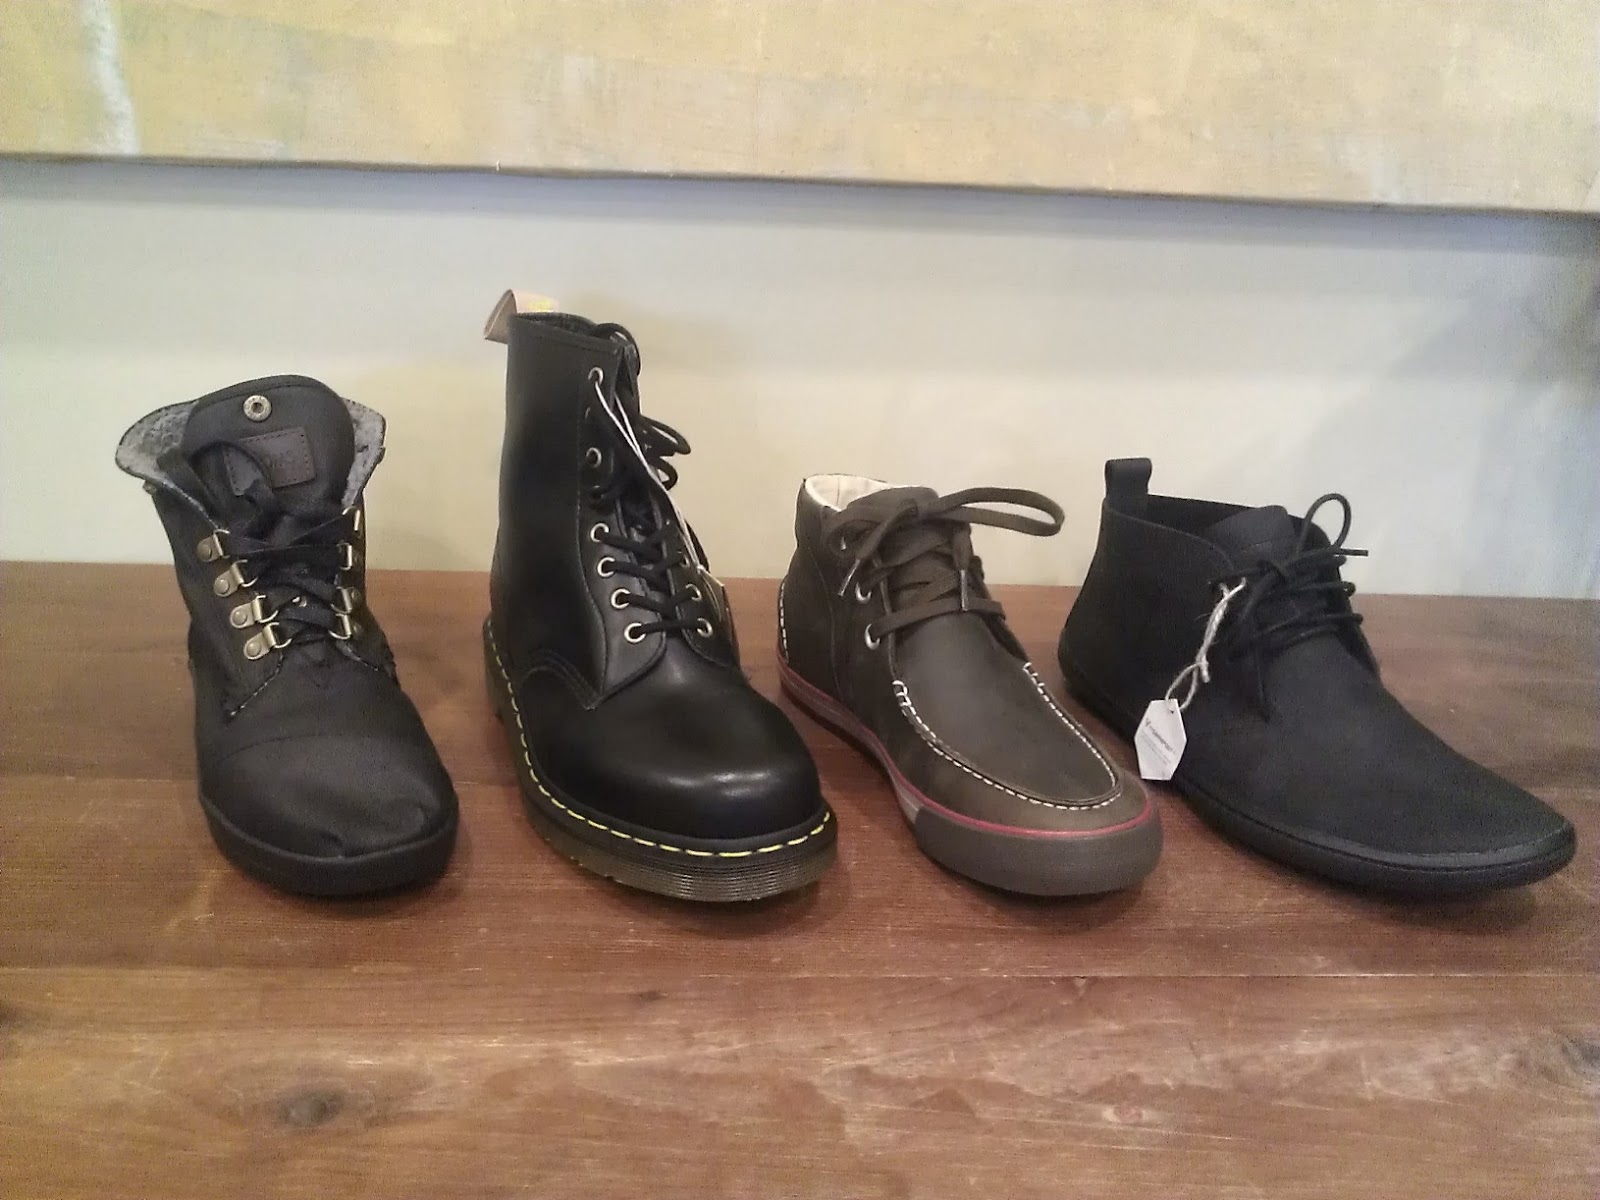 Pie Footwear: January 2013